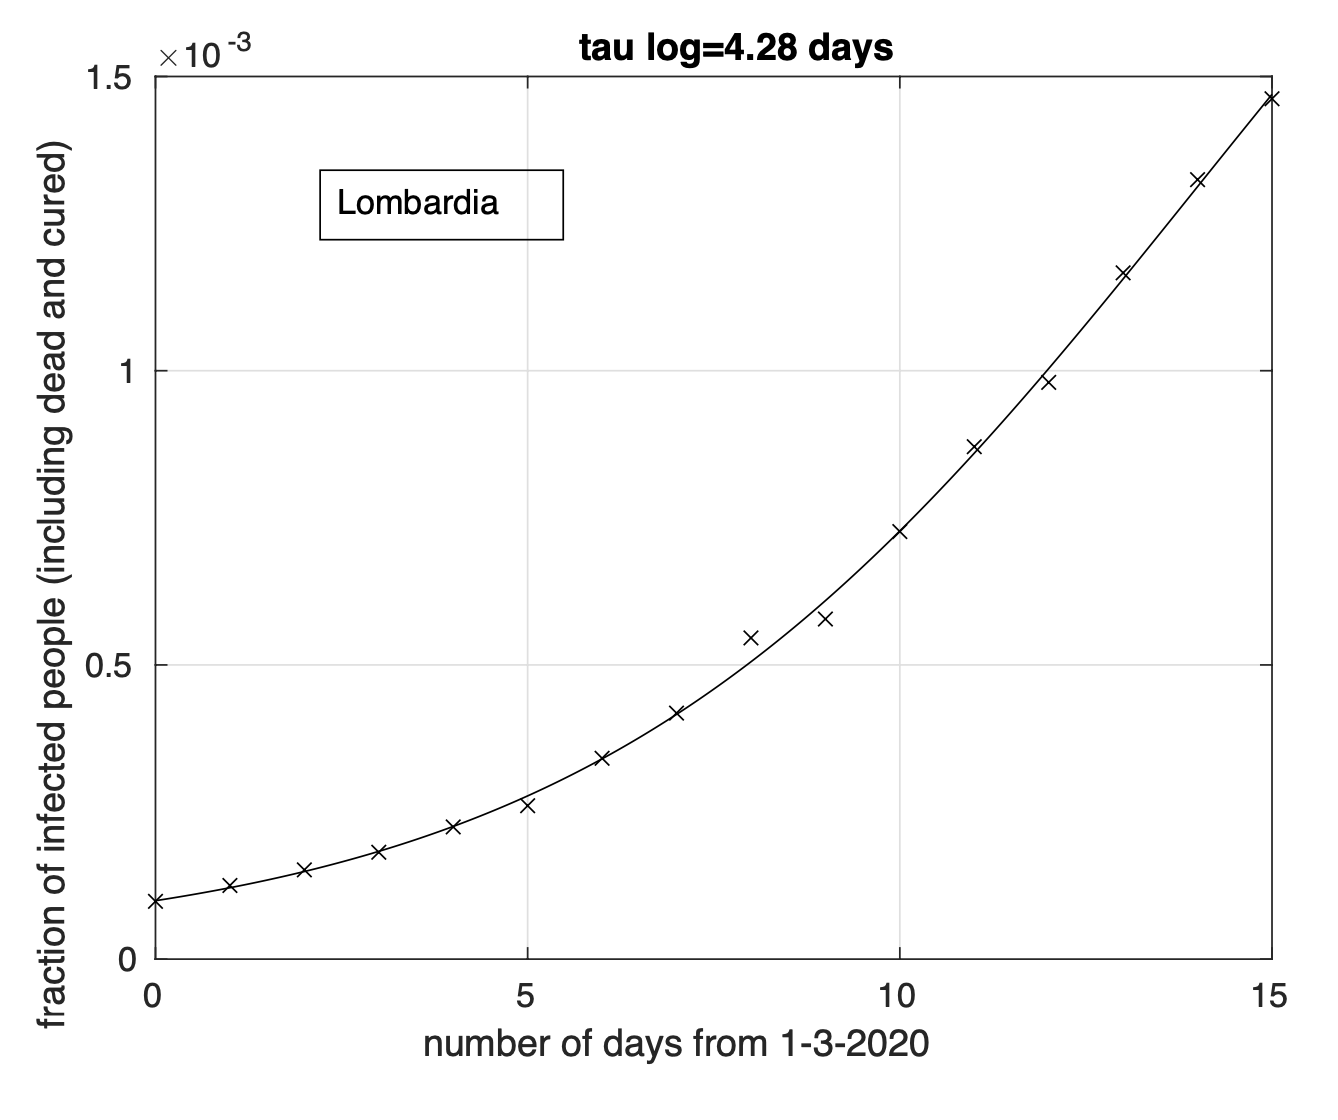 Figure 1. Frazione del numero di contagiati osservati in Lombardia rispetto alla popolazione della regione in funzione del tempo a partire dal 1 marzo. Il miglior fit con un modello logistico è sovrapposto ai dati.